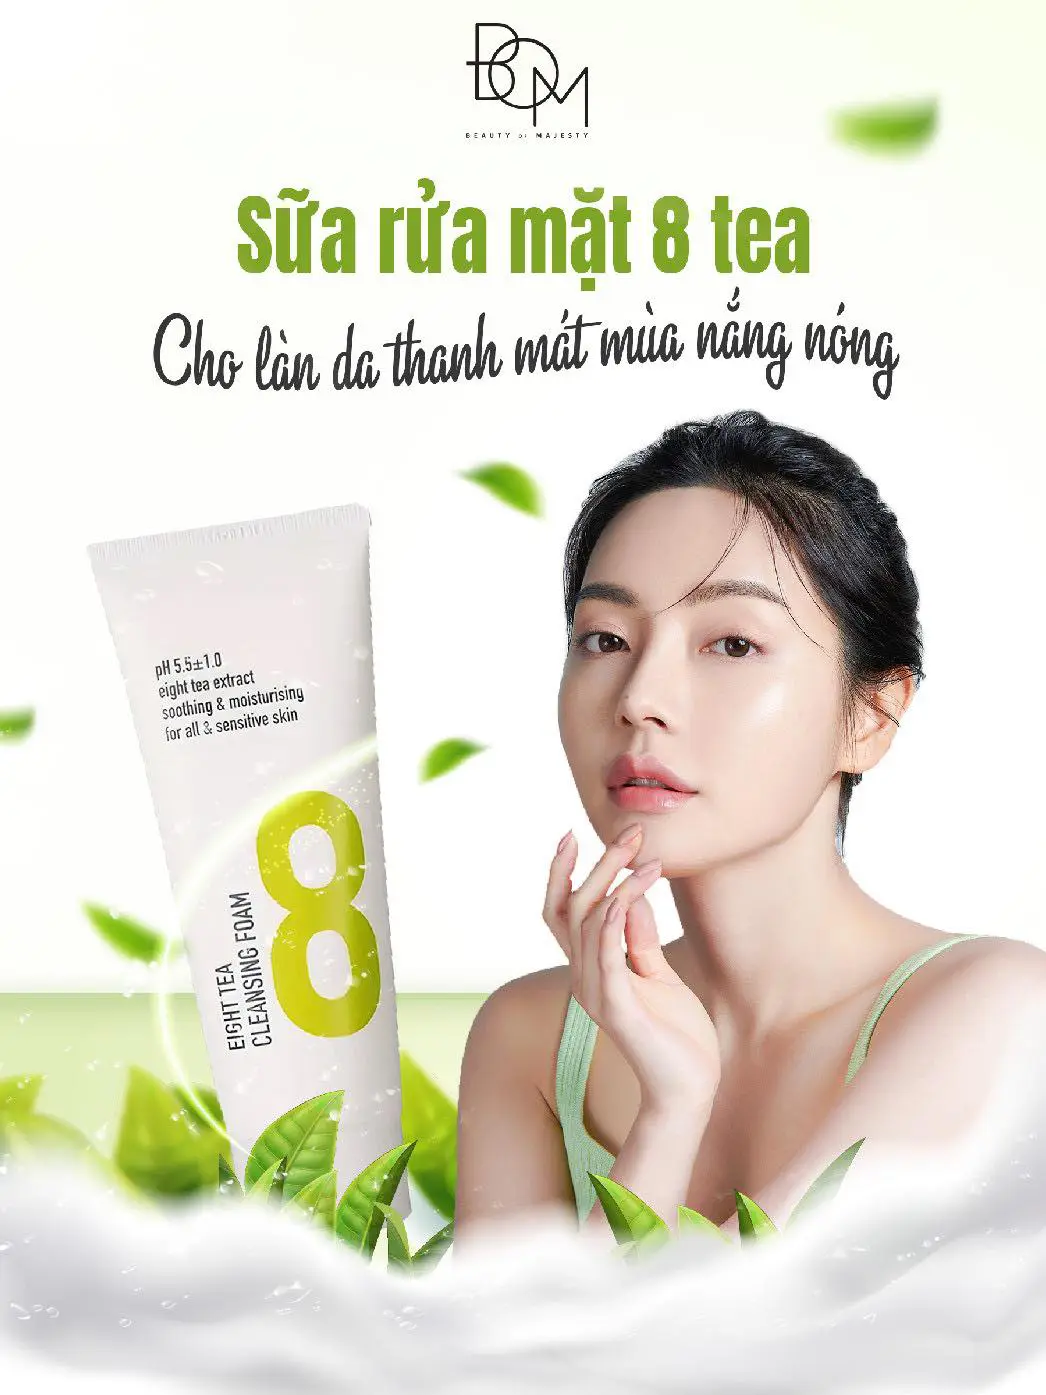 Sữa rửa mặt trà xanh của Hàn Quốc phù hợp với loại da nào?